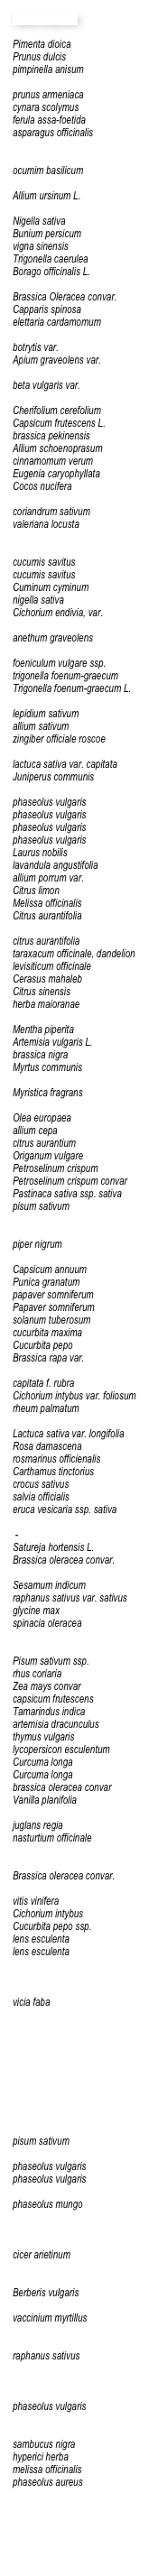 Name botanisch

Pimenta dioica Prunus dulcispimpinella anisum prunus armeniacacynara scolymusferula assa-foetidaasparagus officinalisocumim basilicumAllium ursinum L.Nigella sativaBunium persicumvigna sinensisTrigonella caeruleaBorago officinalis L.Brassica Oleracea convar.Capparis spinosaelettaria cardamomumbotrytis var.Apium graveolens var.beta vulgaris var.Cherifolium cerefoliumCapsicum frutescens L.brassica pekinensisAllium schoenoprasumcinnamomum verumEugenia caryophyllataCocos nuciferacoriandrum sativumvaleriana locustacucumis savituscucumis savitusCuminum cyminumnigella sativaCichorium endivia, var.anethum graveolensfoeniculum vulgare ssp. trigonella foenum-graecumTrigonella foenum-graecum L.lepidium sativumallium sativumzingiber officiale roscoelactuca sativa var. capitataJuniperus communisphaseolus vulgarisphaseolus vulgarisphaseolus vulgarisphaseolus vulgarisLaurus nobilislavandula angustifoliaallium porrum var.Citrus limonMelissa officinalisCitrus aurantifoliacitrus aurantifoliataraxacum officinale, dandelionlevisiticum officinaleCerasus mahalebCitrus sinensisherba maioranaeMentha piperitaArtemisia vulgaris L.brassica nigraMyrtus communisMyristica fragransOlea europaeaallium cepacitrus aurantiumOriganum vulgarePetroselinum crispumPetroselinum crispum convarPastinaca sativa ssp. sativapisum sativumpiper nigrumCapsicum annuumPunica granatumpapaver somniferumPapaver somniferumsolanum tuberosumcucurbita maximaCucurbita pepoBrassica rapa var.capitata f. rubraCichorium intybus var. foliosumrheum palmatumLactuca sativa var. longifoliaRosa damascenarosmarinus officienalisCarthamus tinctoriuscrocus sativussalvia officialiseruca vesicaria ssp. sativa -Satureja hortensis L.Brassica oleracea convar.Sesamum indicumraphanus sativus var. sativusglycine maxspinacia oleraceaPisum sativum ssp.rhus coriariaZea mays convarcapsicum frutescensTamarindus indicaartemisia dracunculusthymus vulgarislycopersicon esculentumCurcuma longaCurcuma longabrassica oleracea convarVanilla planifoliajuglans regianasturtium officinaleBrassica oleracea convar. vitis viniferaCichorium intybusCucurbita pepo ssp.lens esculentalens esculentavicia fabapisum sativumphaseolus vulgarisphaseolus vulgarisphaseolus mungocicer arietinumBerberis vulgarisvaccinium myrtillusraphanus sativusphaseolus vulgarissambucus nigrahyperici herbamelissa officinalisphaseolus aureus
